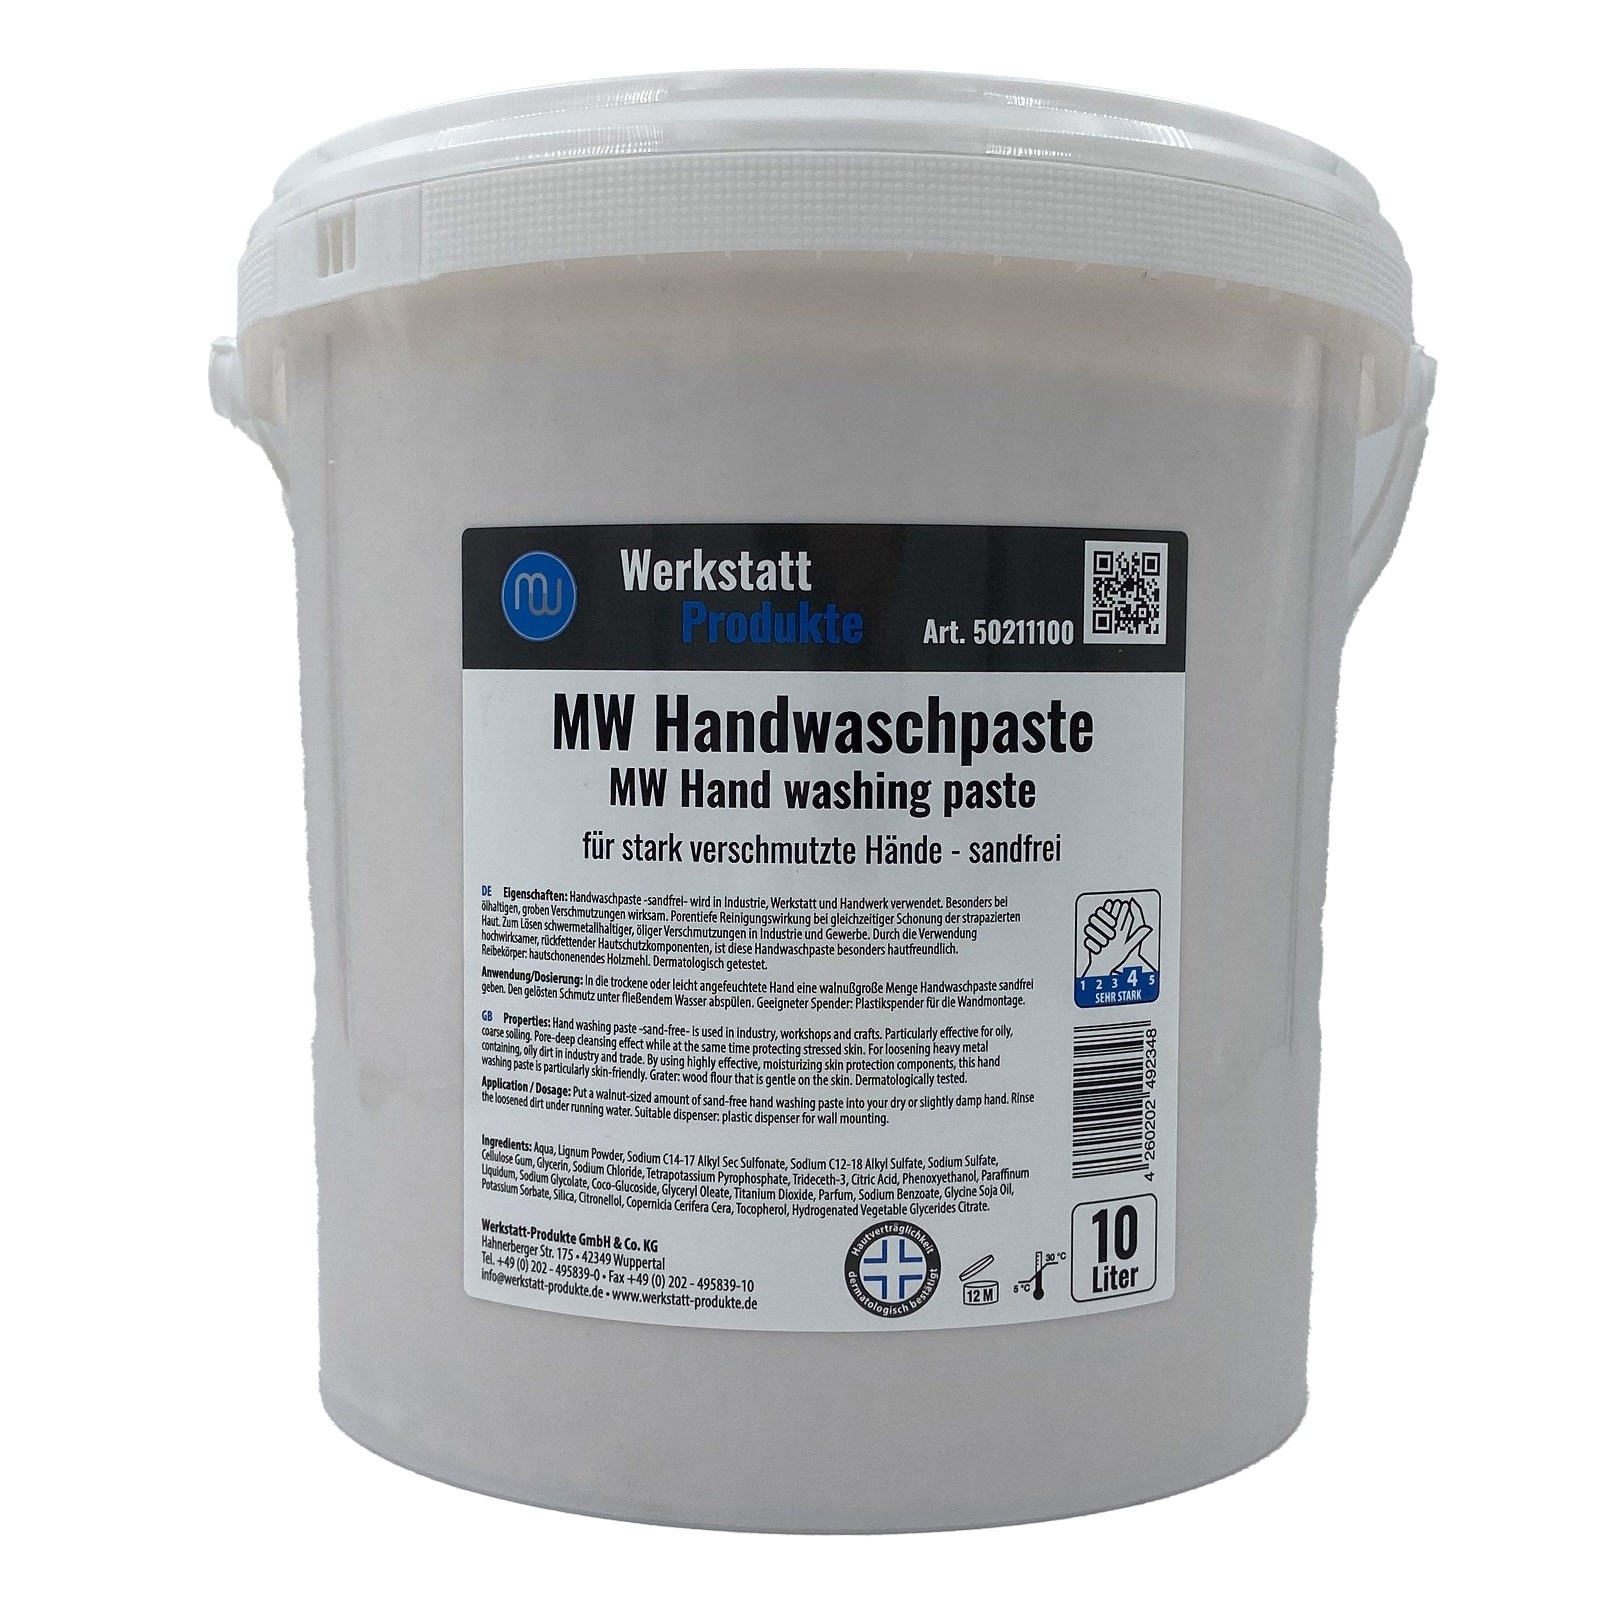 MW Handwaschpaste 10L